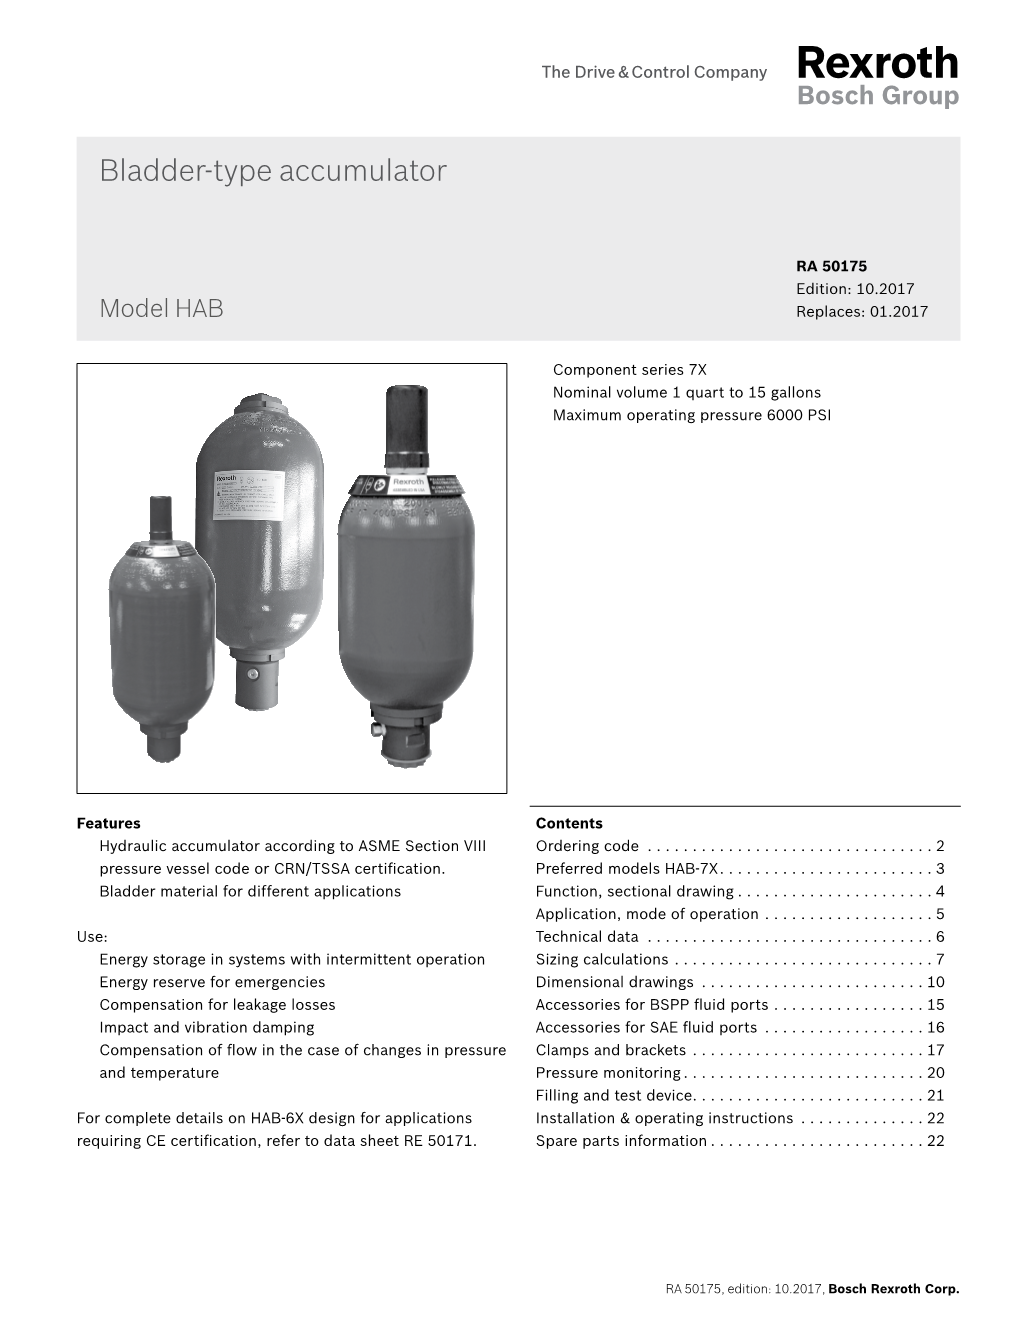 Bladder-Type Accumulator